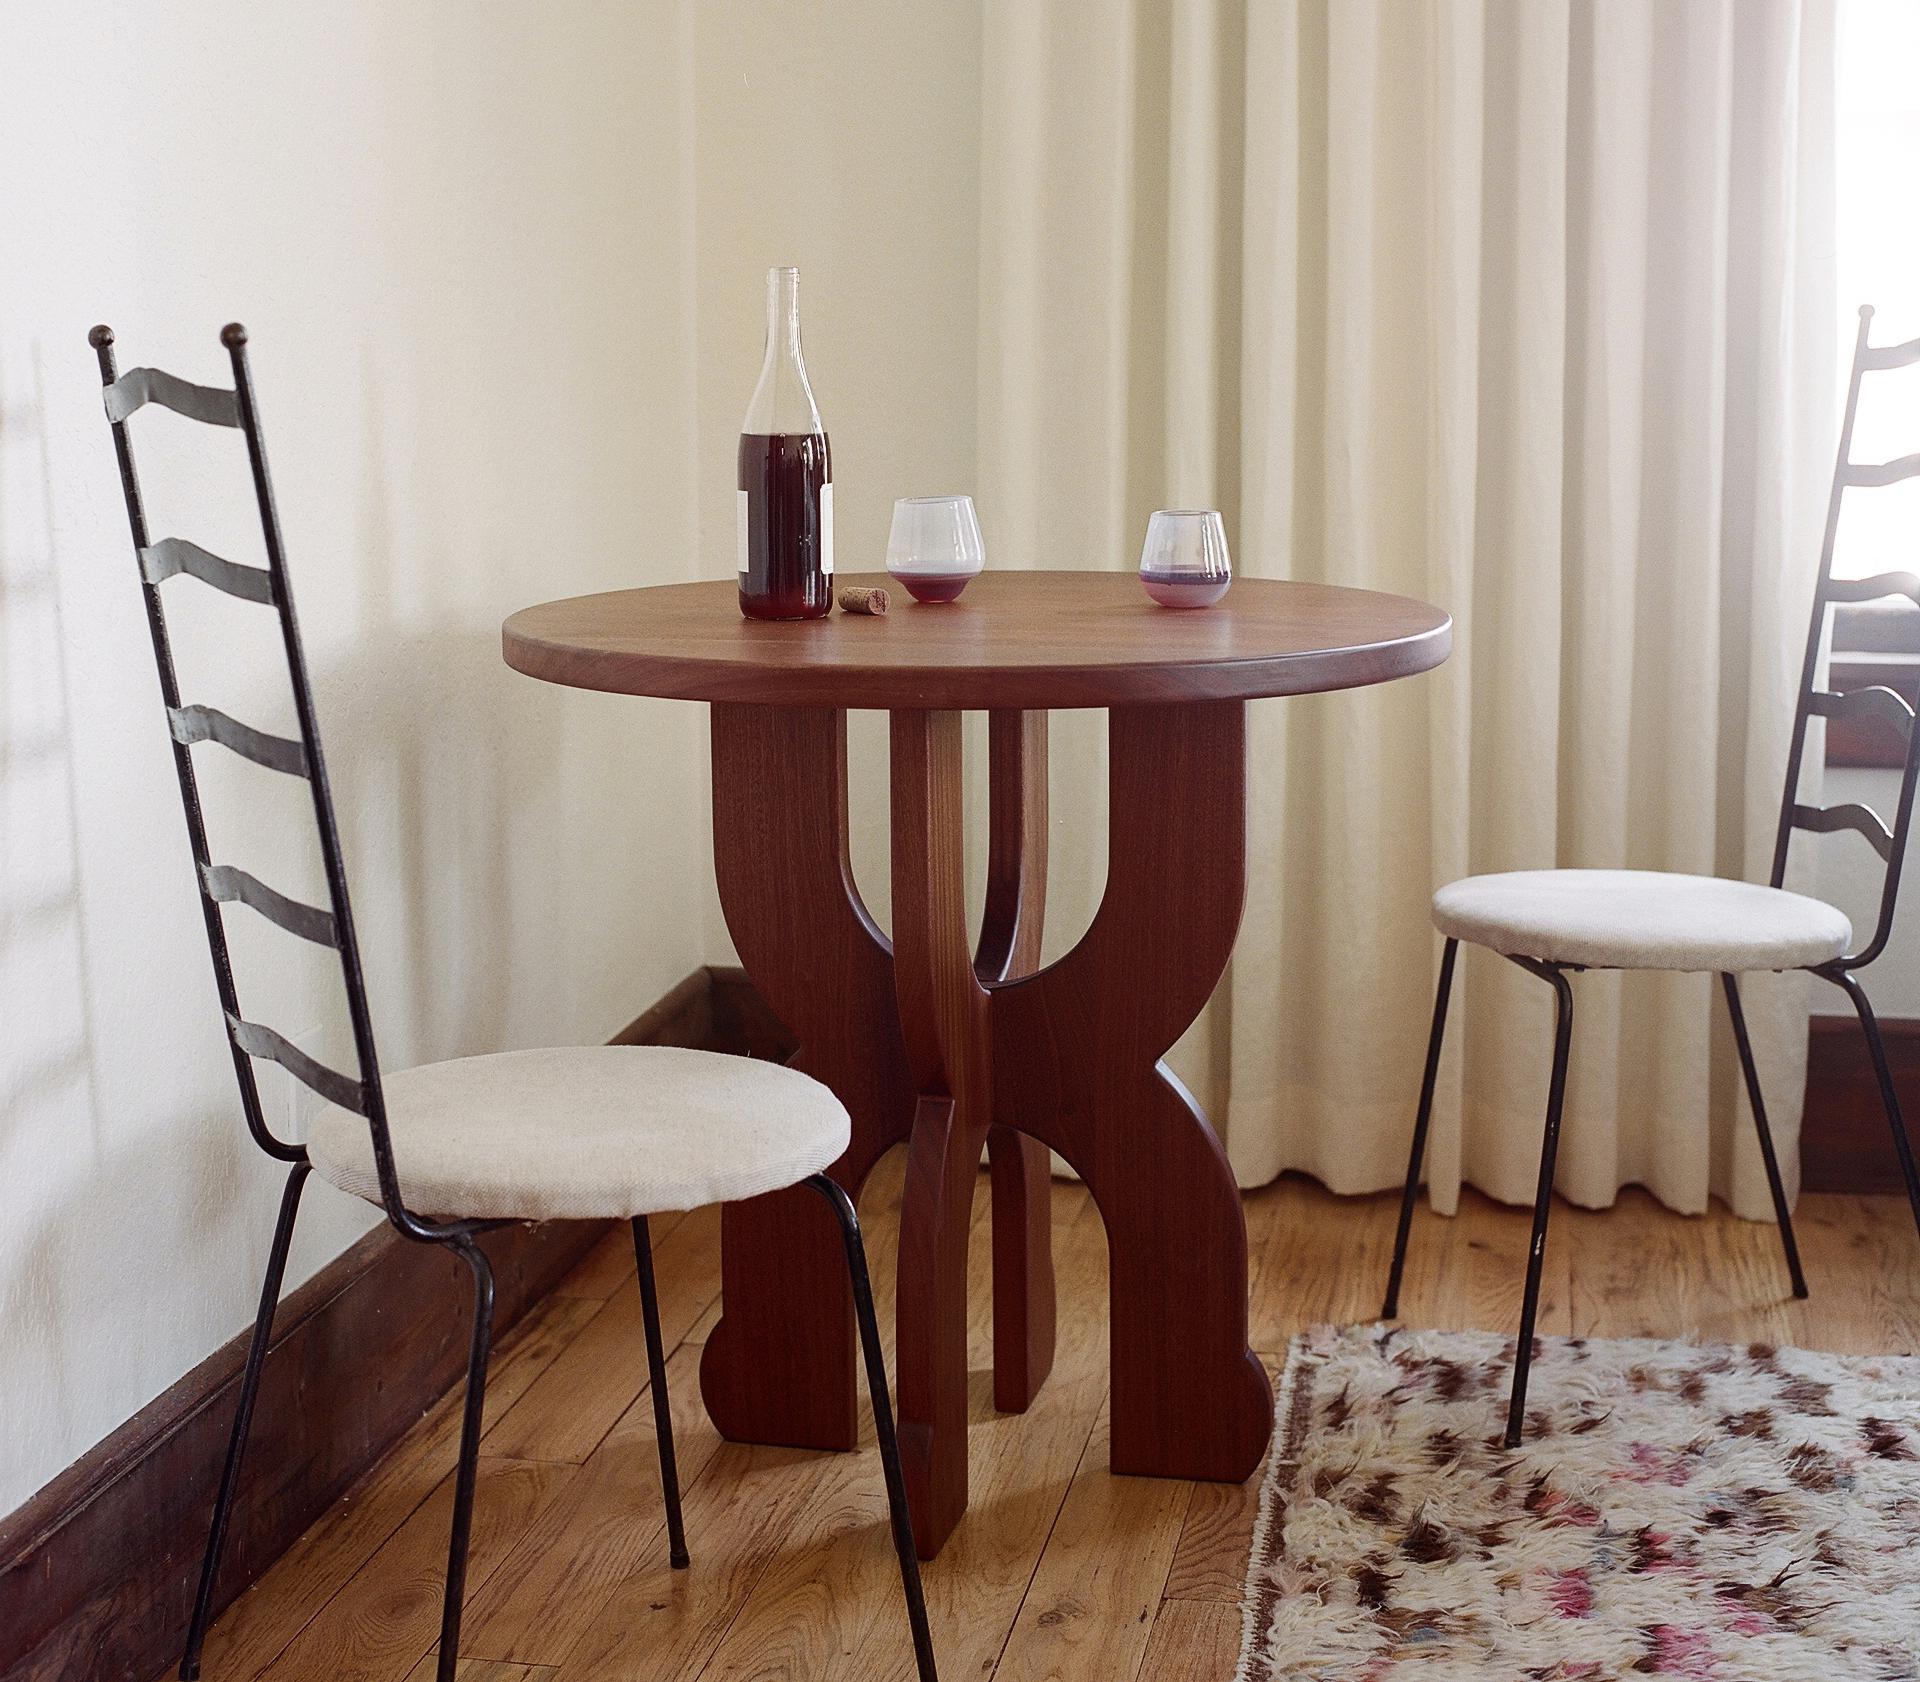 La table à vin Table se caractérise par des courbes douces et une silhouette ludique. Petite mais polyvalente, elle peut être utilisée comme table d'entrée, table d'appoint surdimensionnée pour le canapé ou petite table pour le coin petit-déjeuner.